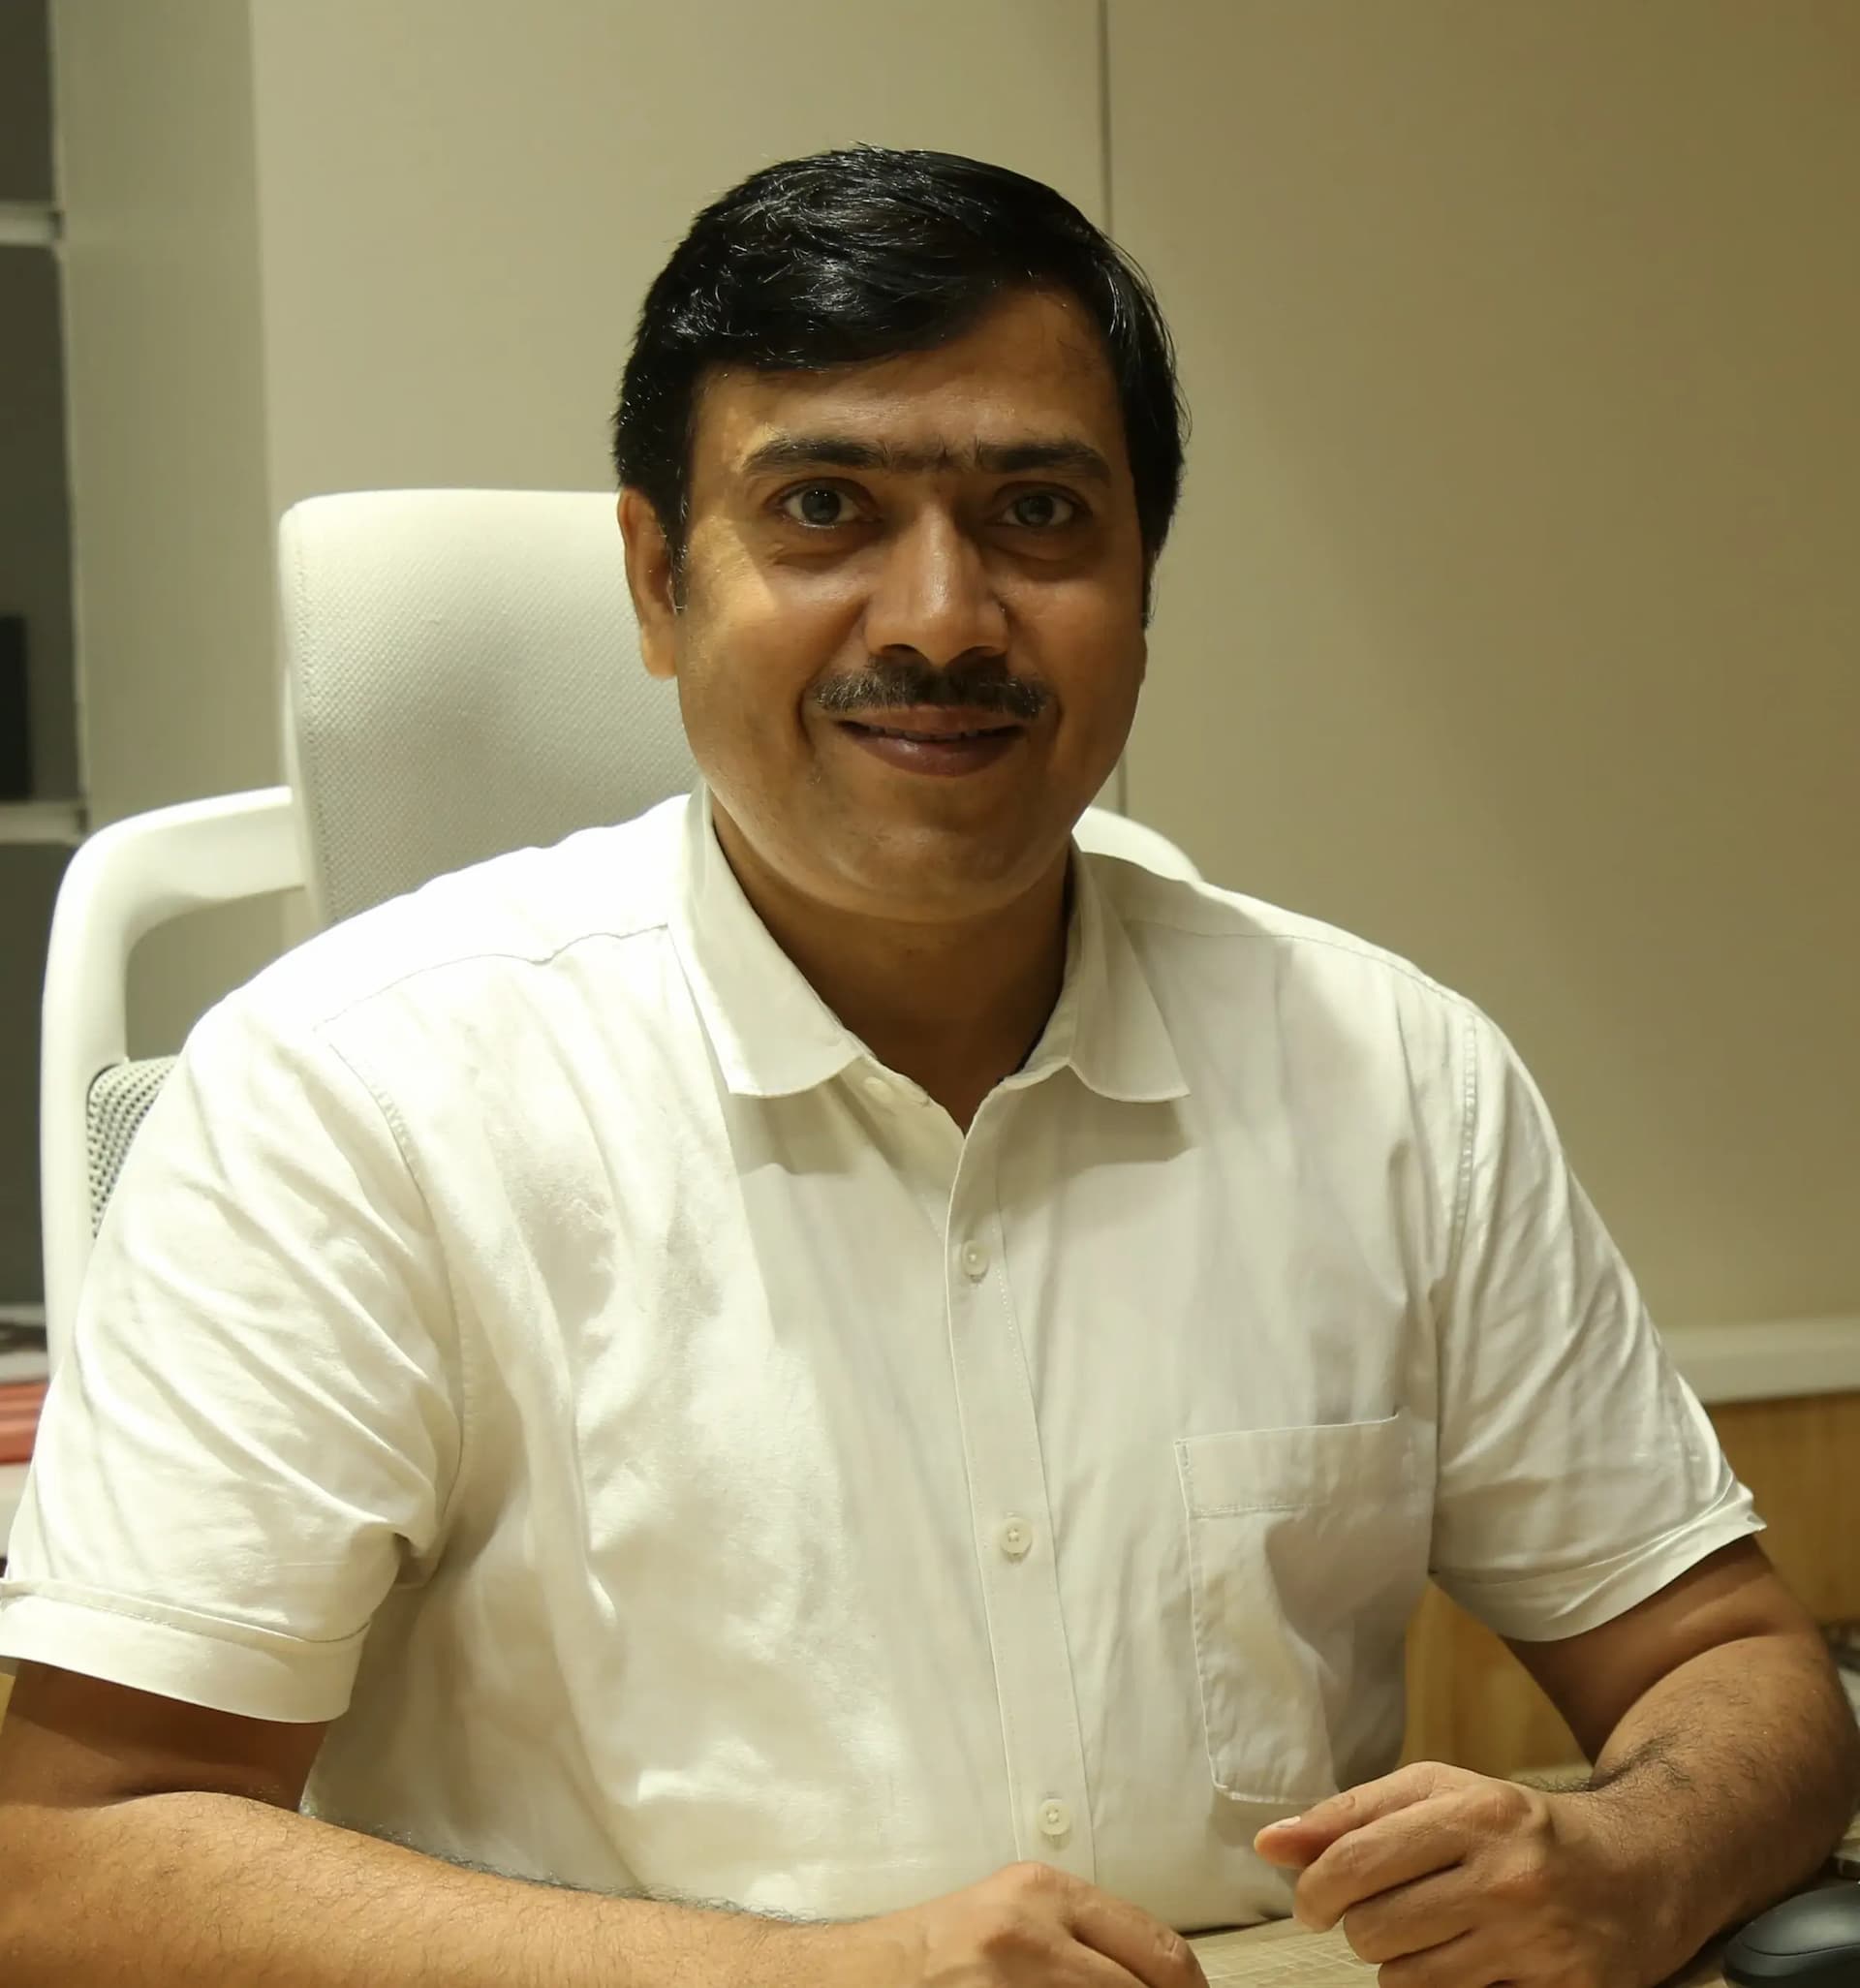 Dr. Ashish Mittal